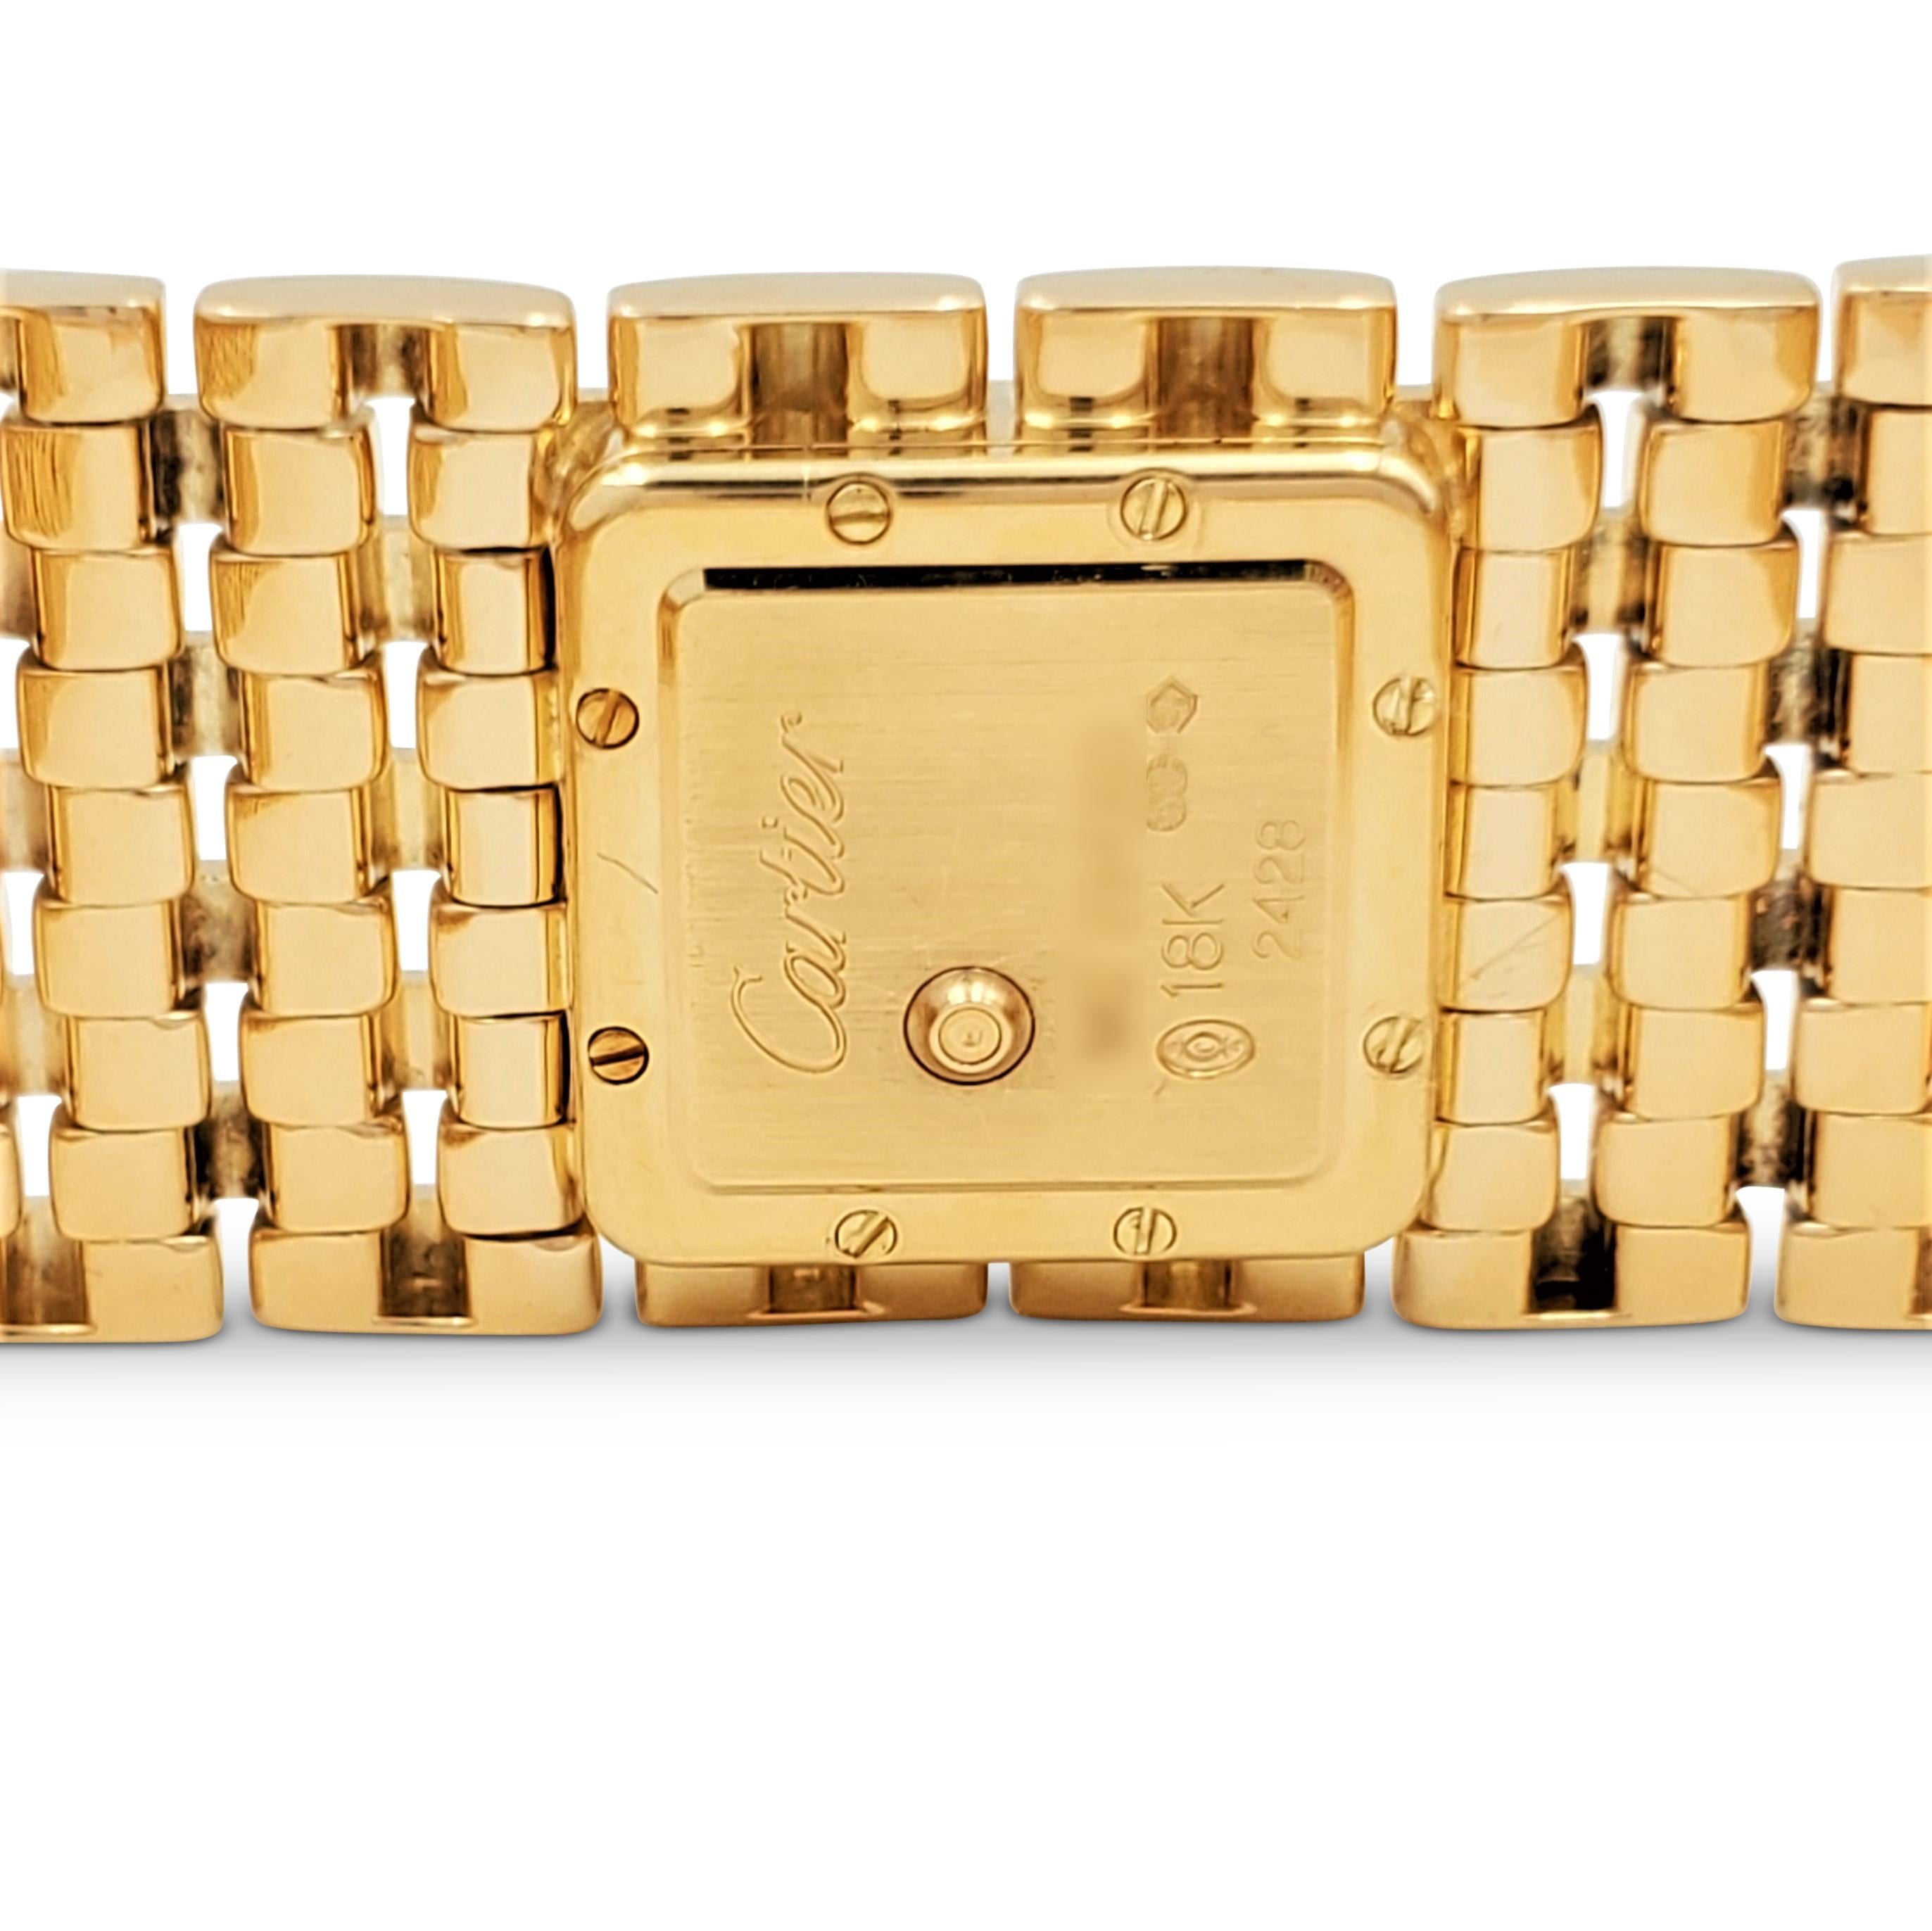 Cartier Panthere Ruban Yellow Gold and Diamond Watch 1